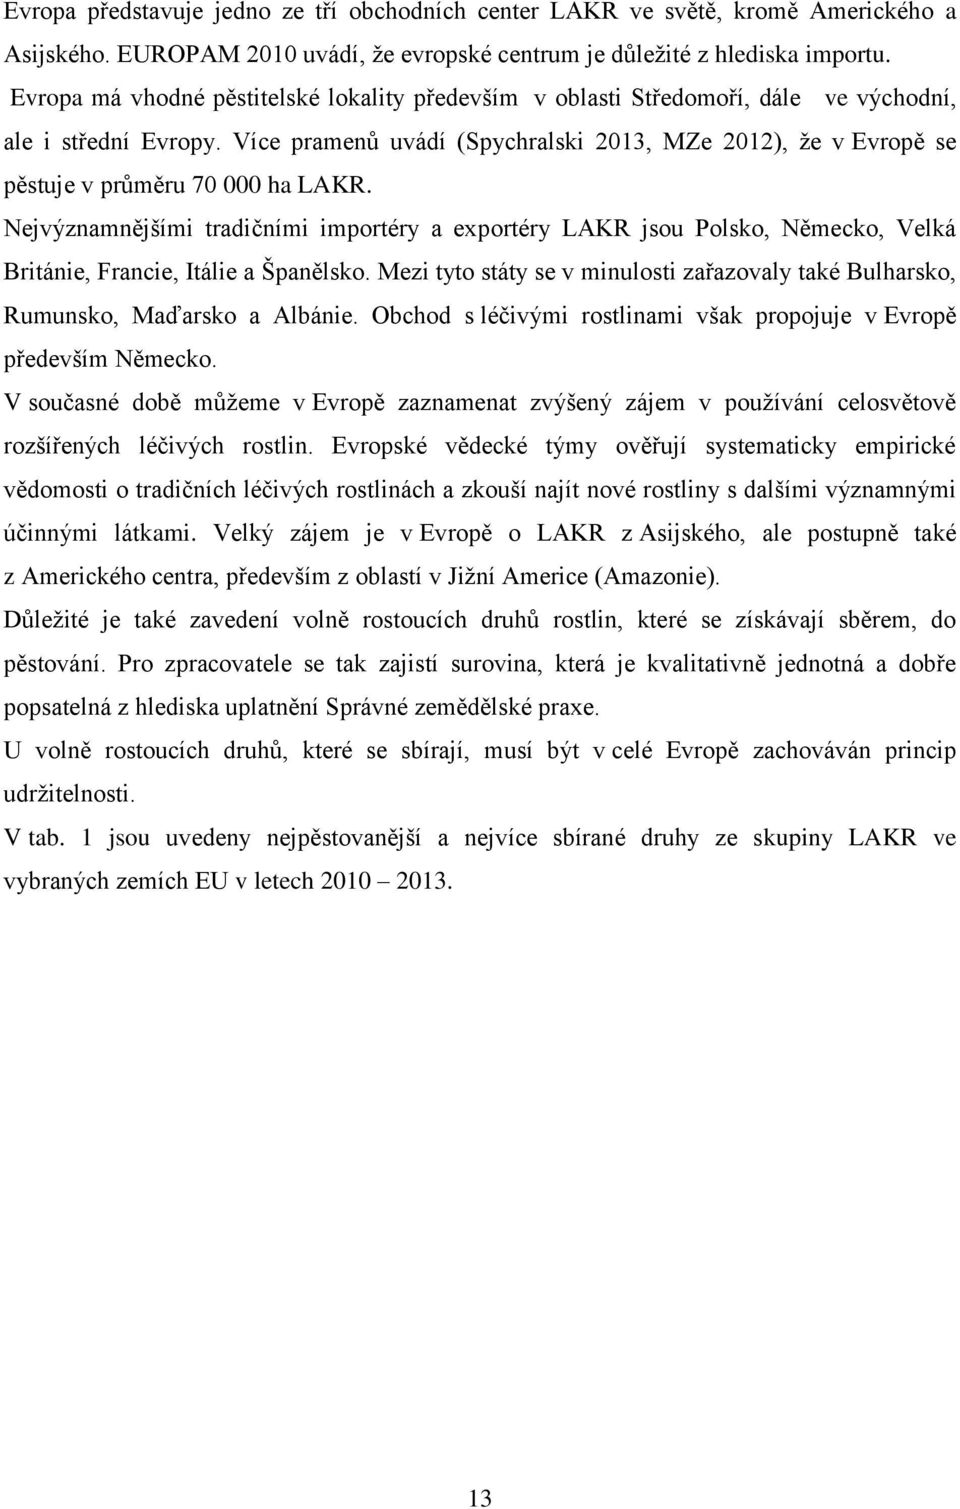 Více pramenů uvádí (Spychralski 2013, MZe 2012), že v Evropě se pěstuje v průměru 70 000 ha LAKR.